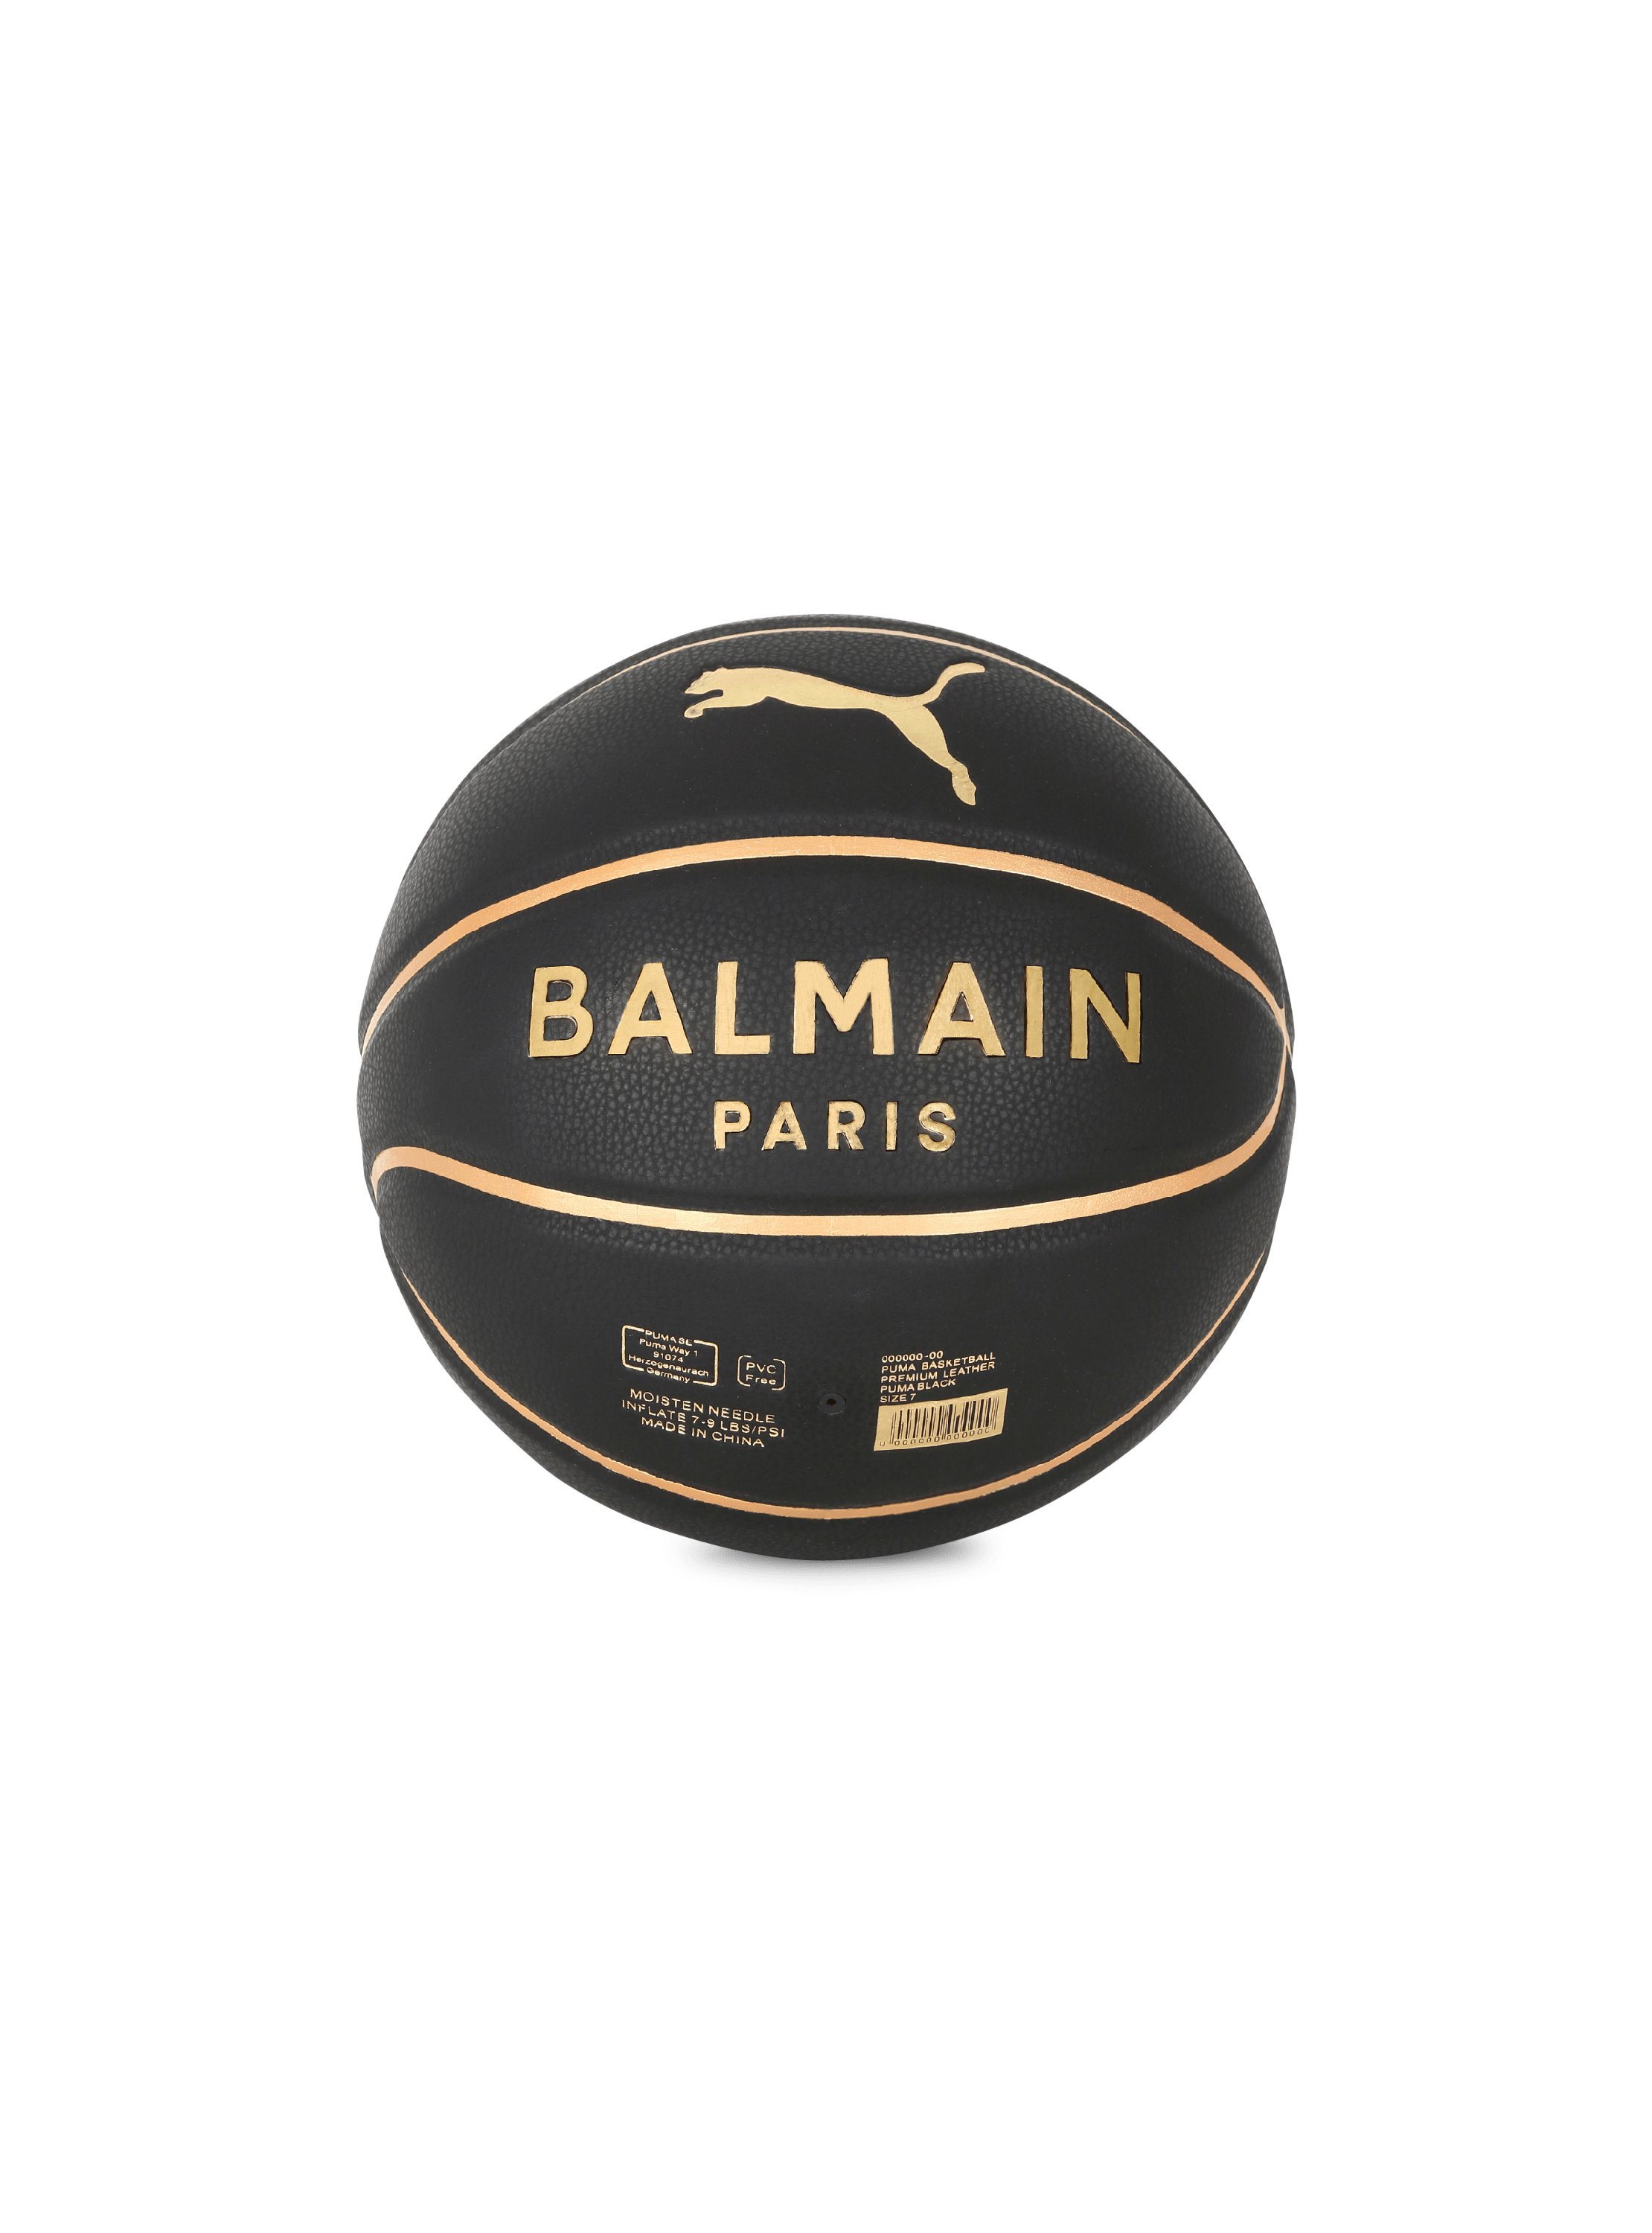 Esclusiva - Balmain x Puma - Pallone da basket